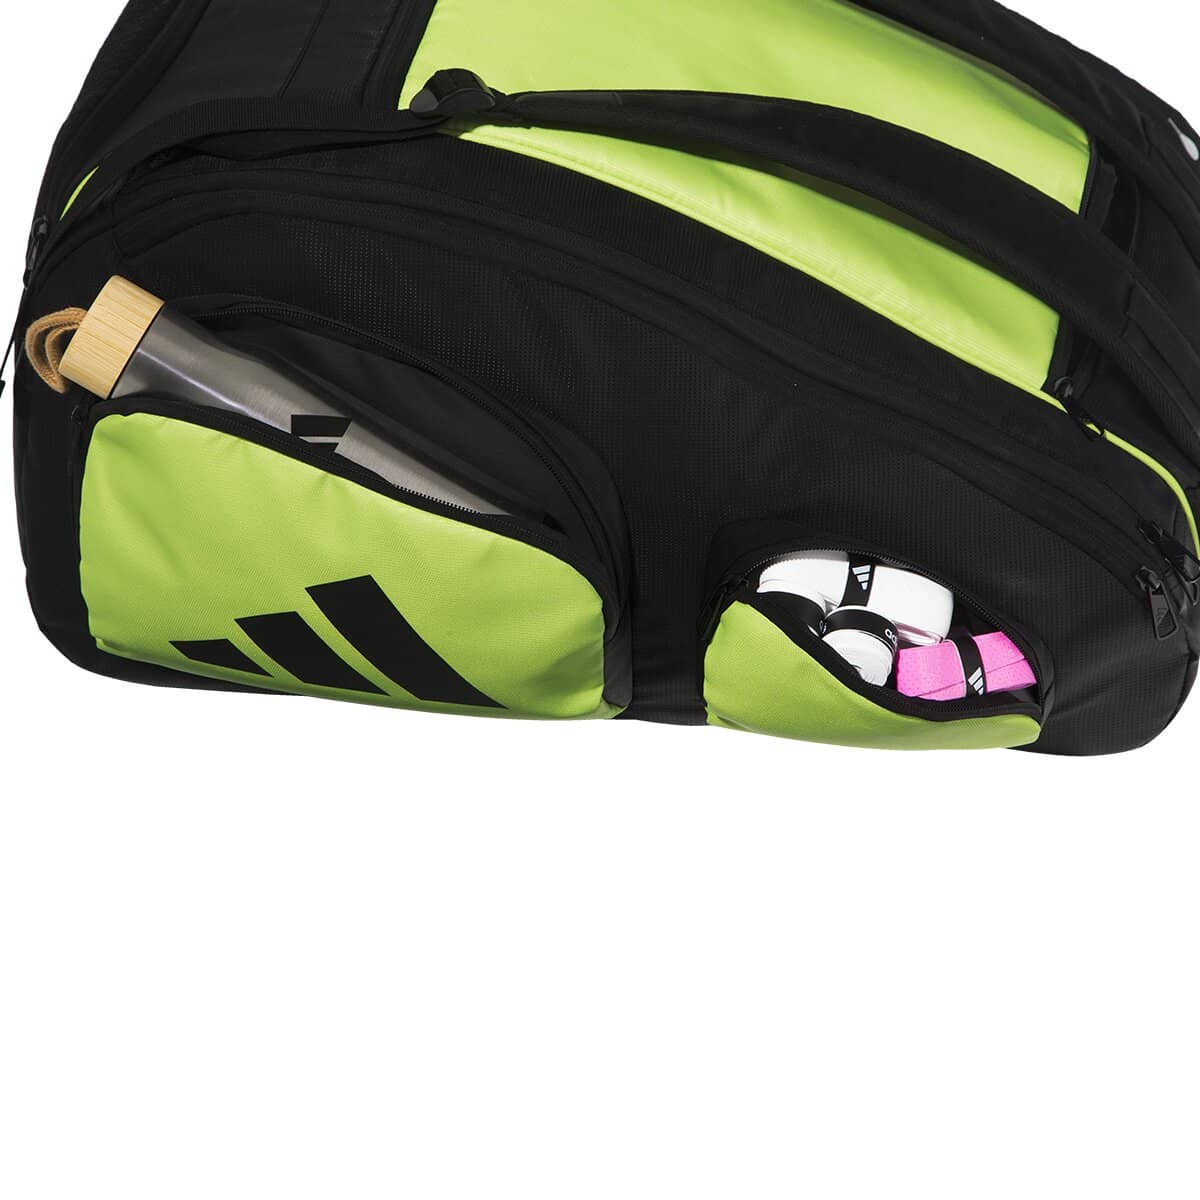 Adidas Pro Tour 3.2 Racket Bag - Lime-Side